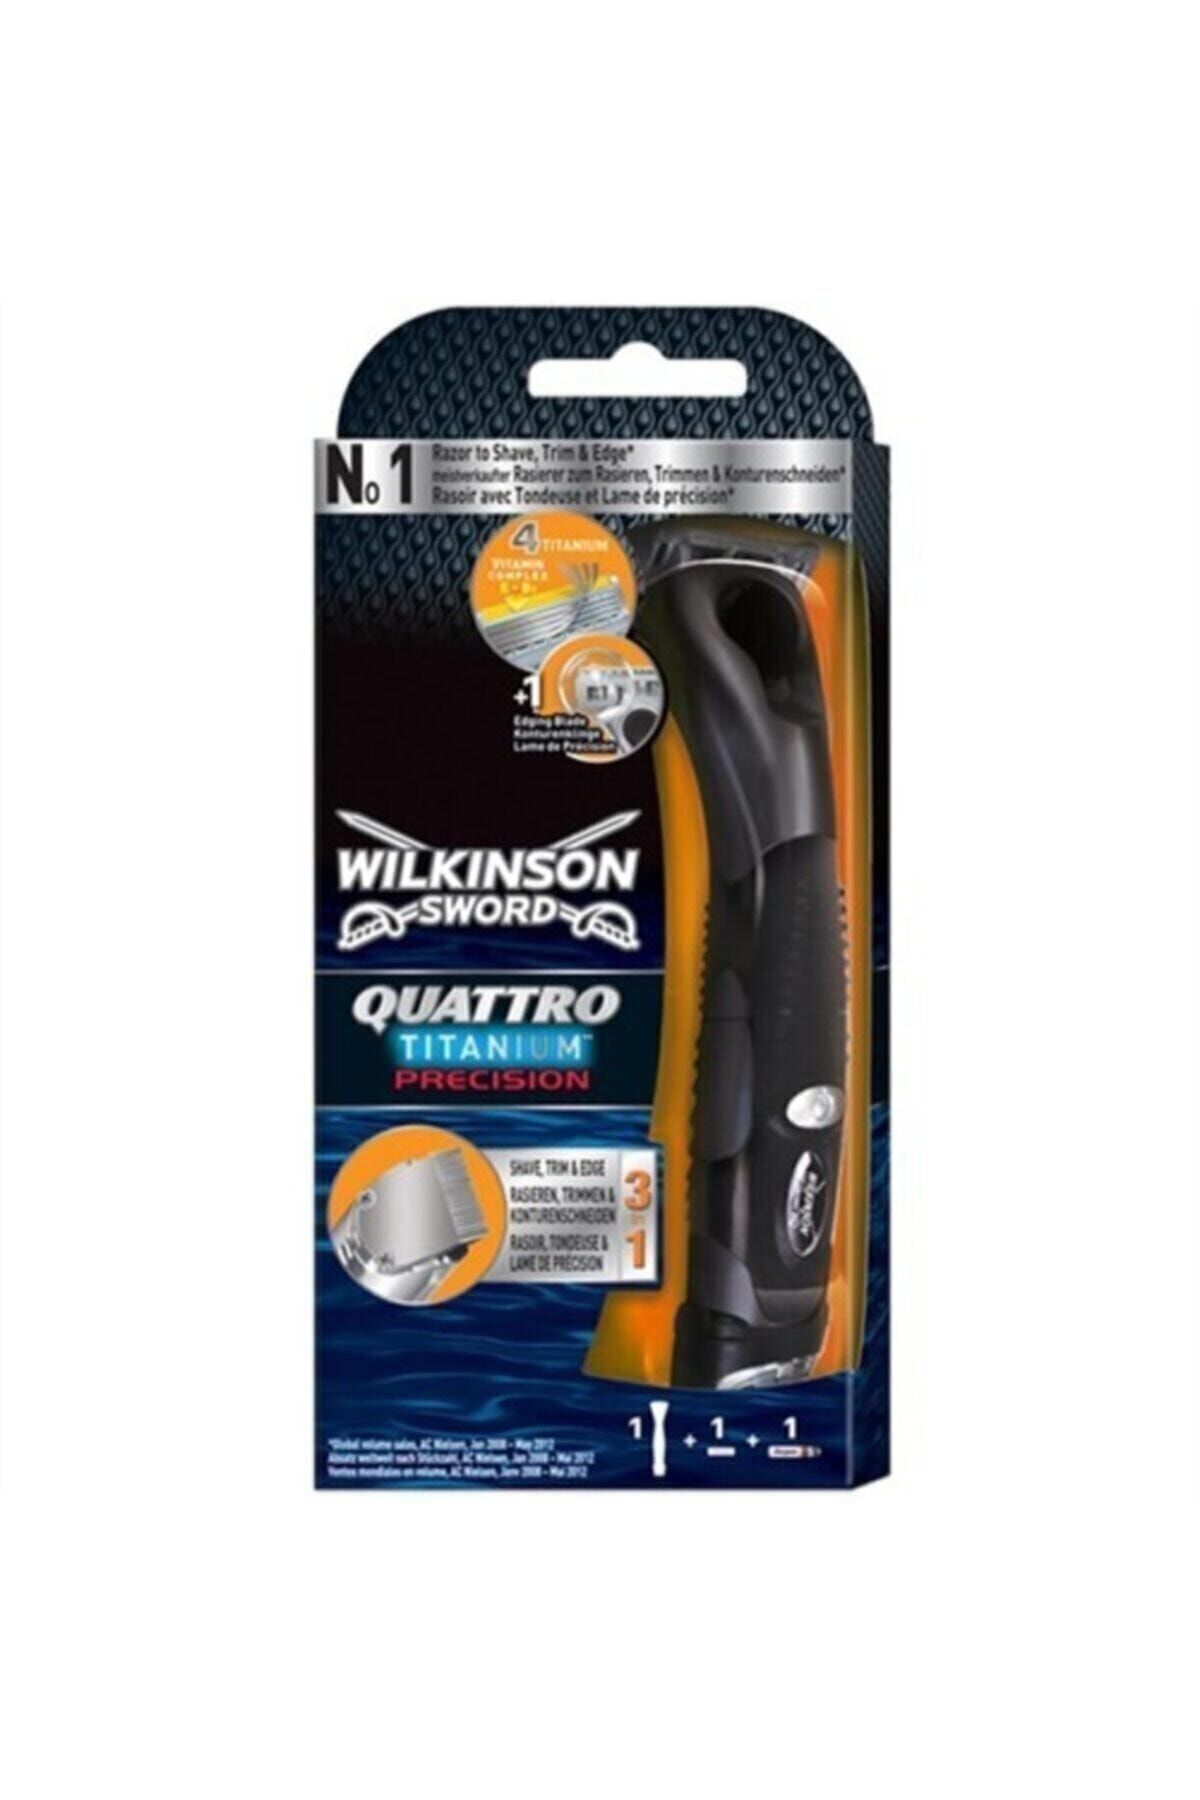 Wilkinson Quattro Titanium Precision Pilli Tıraş Makinası